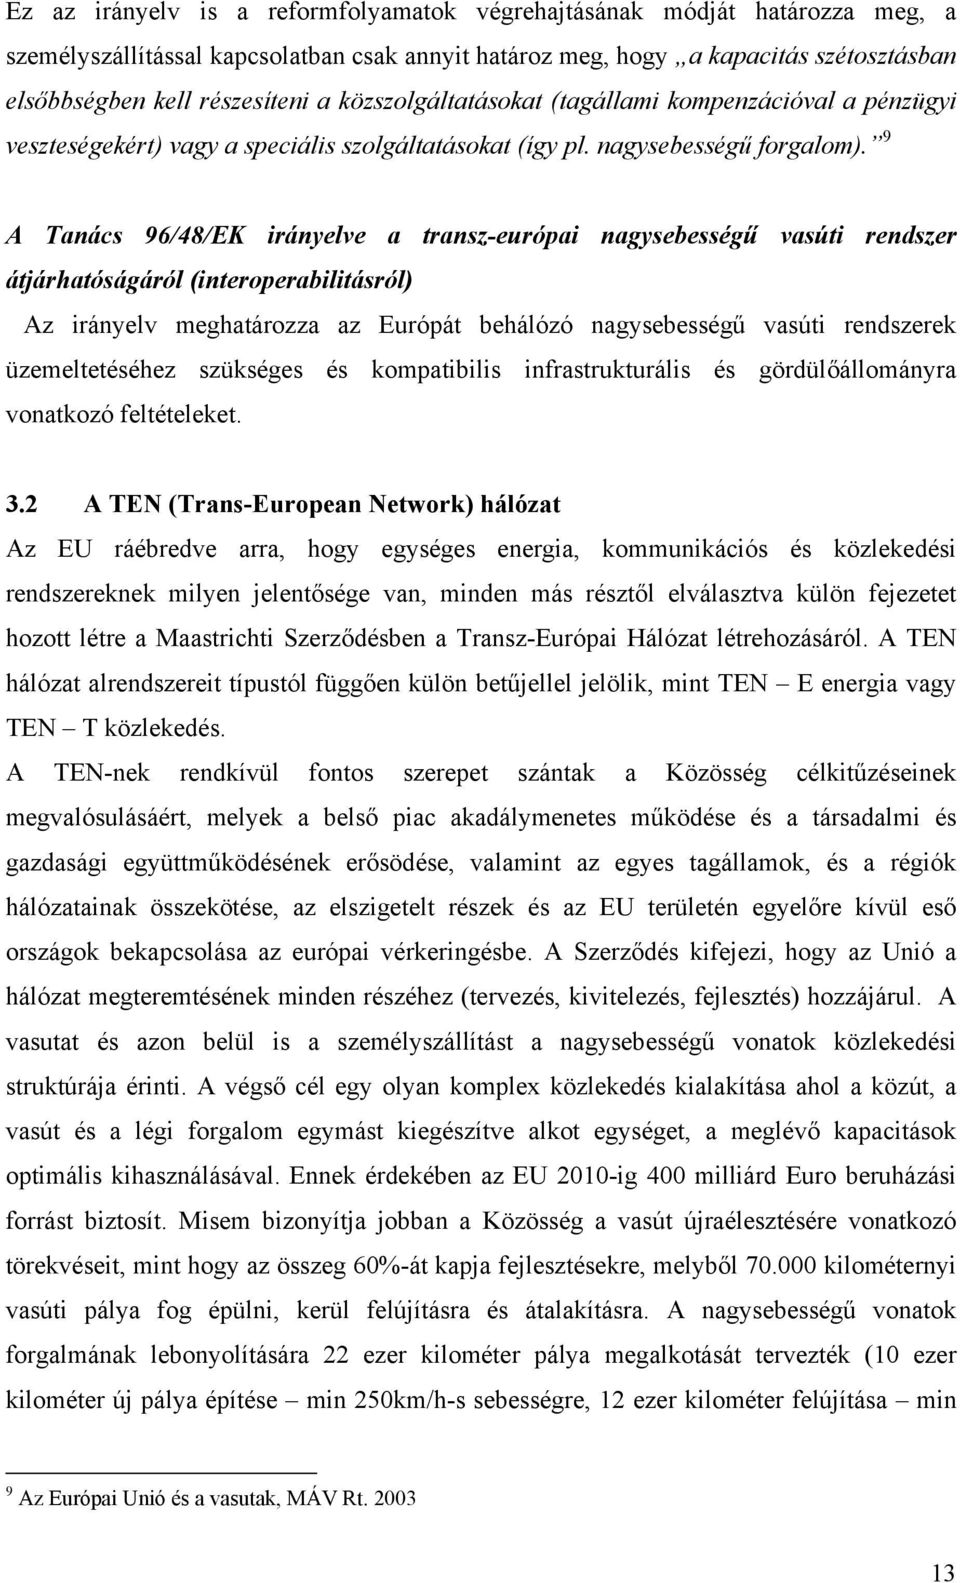 9 A Tanács 96/48/EK irányelve a transz-európai nagysebességű vasúti rendszer átjárhatóságáról (interoperabilitásról) Az irányelv meghatározza az Európát behálózó nagysebességű vasúti rendszerek